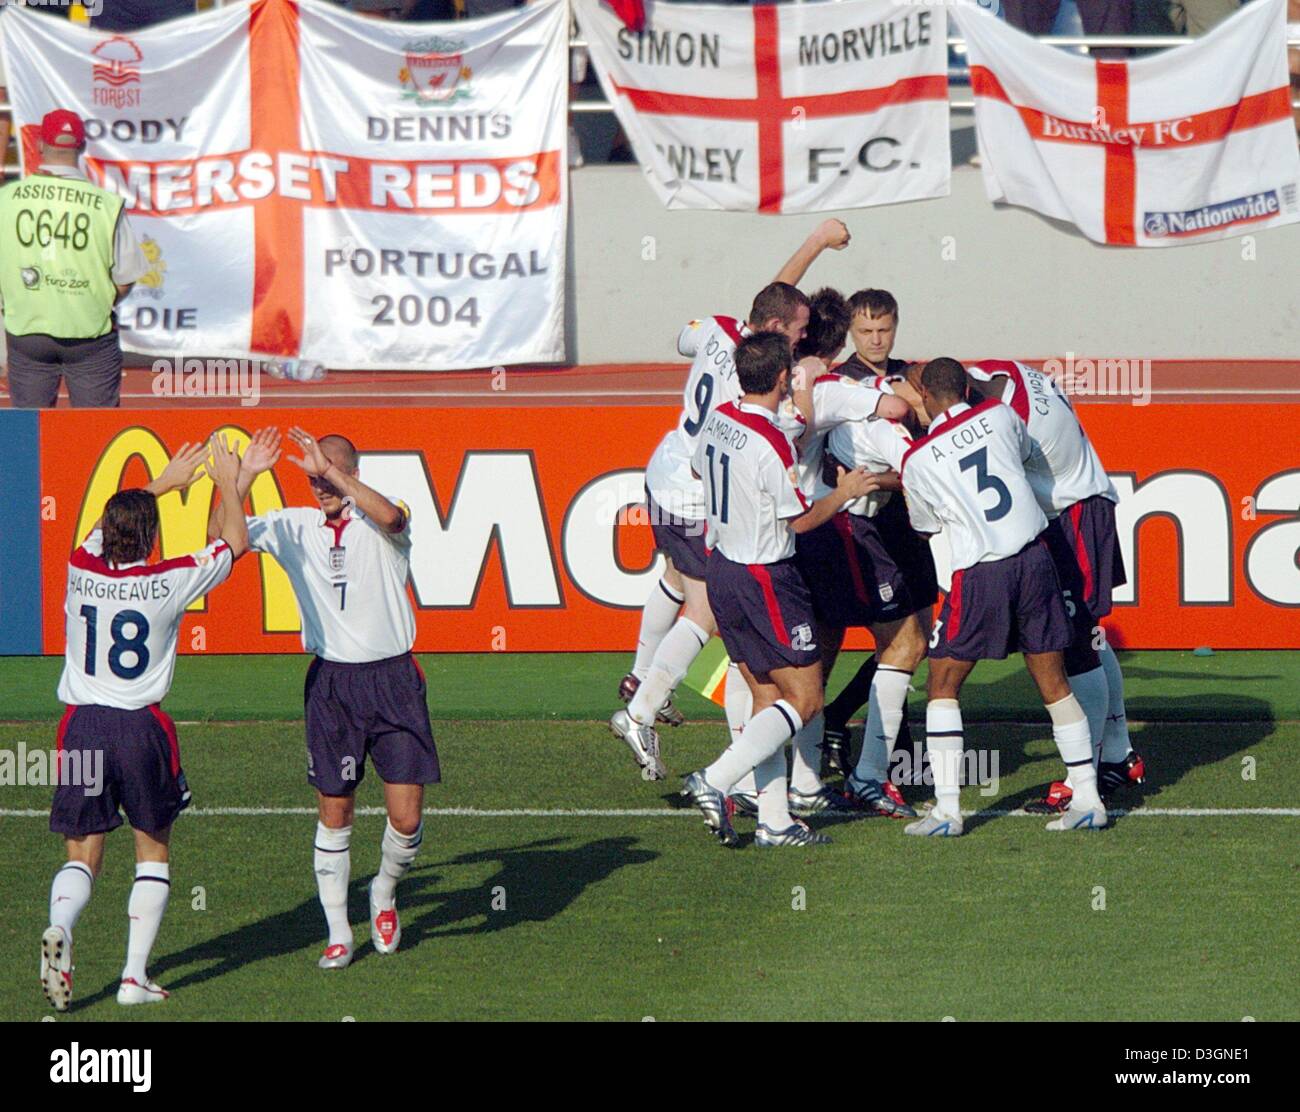 (Afp) - les joueurs de l'Angleterre et applaudir et féliciter jubilate leur buteur après Steven Gerrard (couverte) après avoir remporté l'Euro de football 2004 Jeu de groupe s'opposant à l'Angleterre et la Suisse à la cidade Stadium à Coimbra, Portugal, 17 juin 2004. L'Angleterre a gagné 3-0.  + + +PAS D'APPLICATIONS DE TÉLÉPHONIE MOBILE + + + Banque D'Images